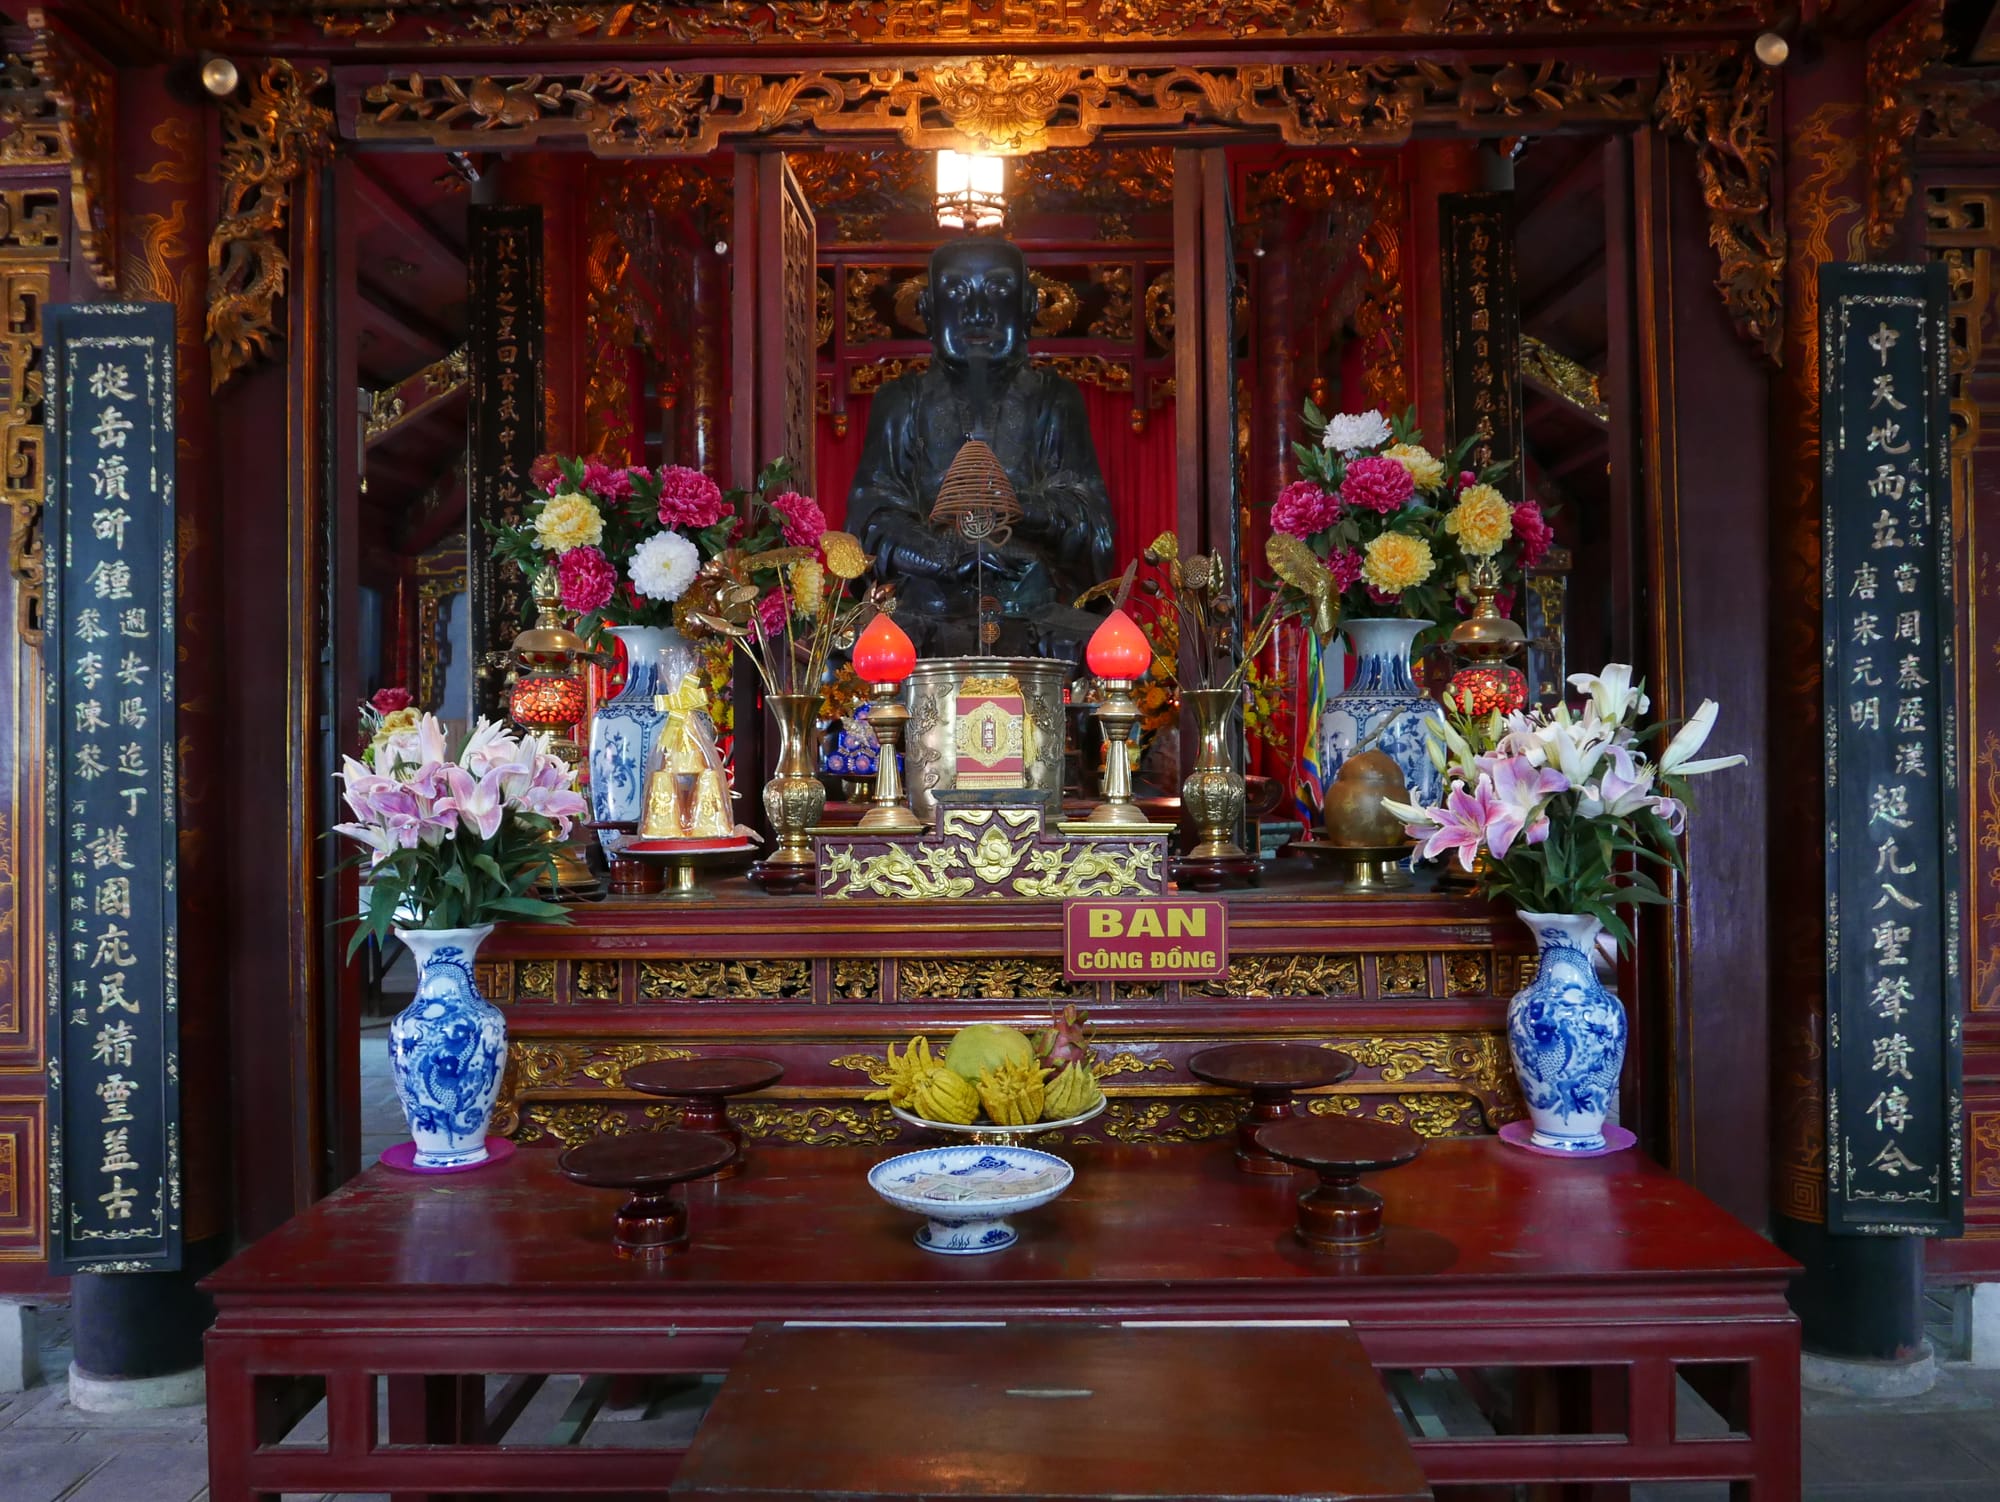 Photo by Author — Đền Quán Thánh (Quan Thanh Temple), 1 Thanh Niên (cnr. Quán Thánh), Quận Ba Đình, Thành Phố Hà Nội, Hanoi, Vietnam